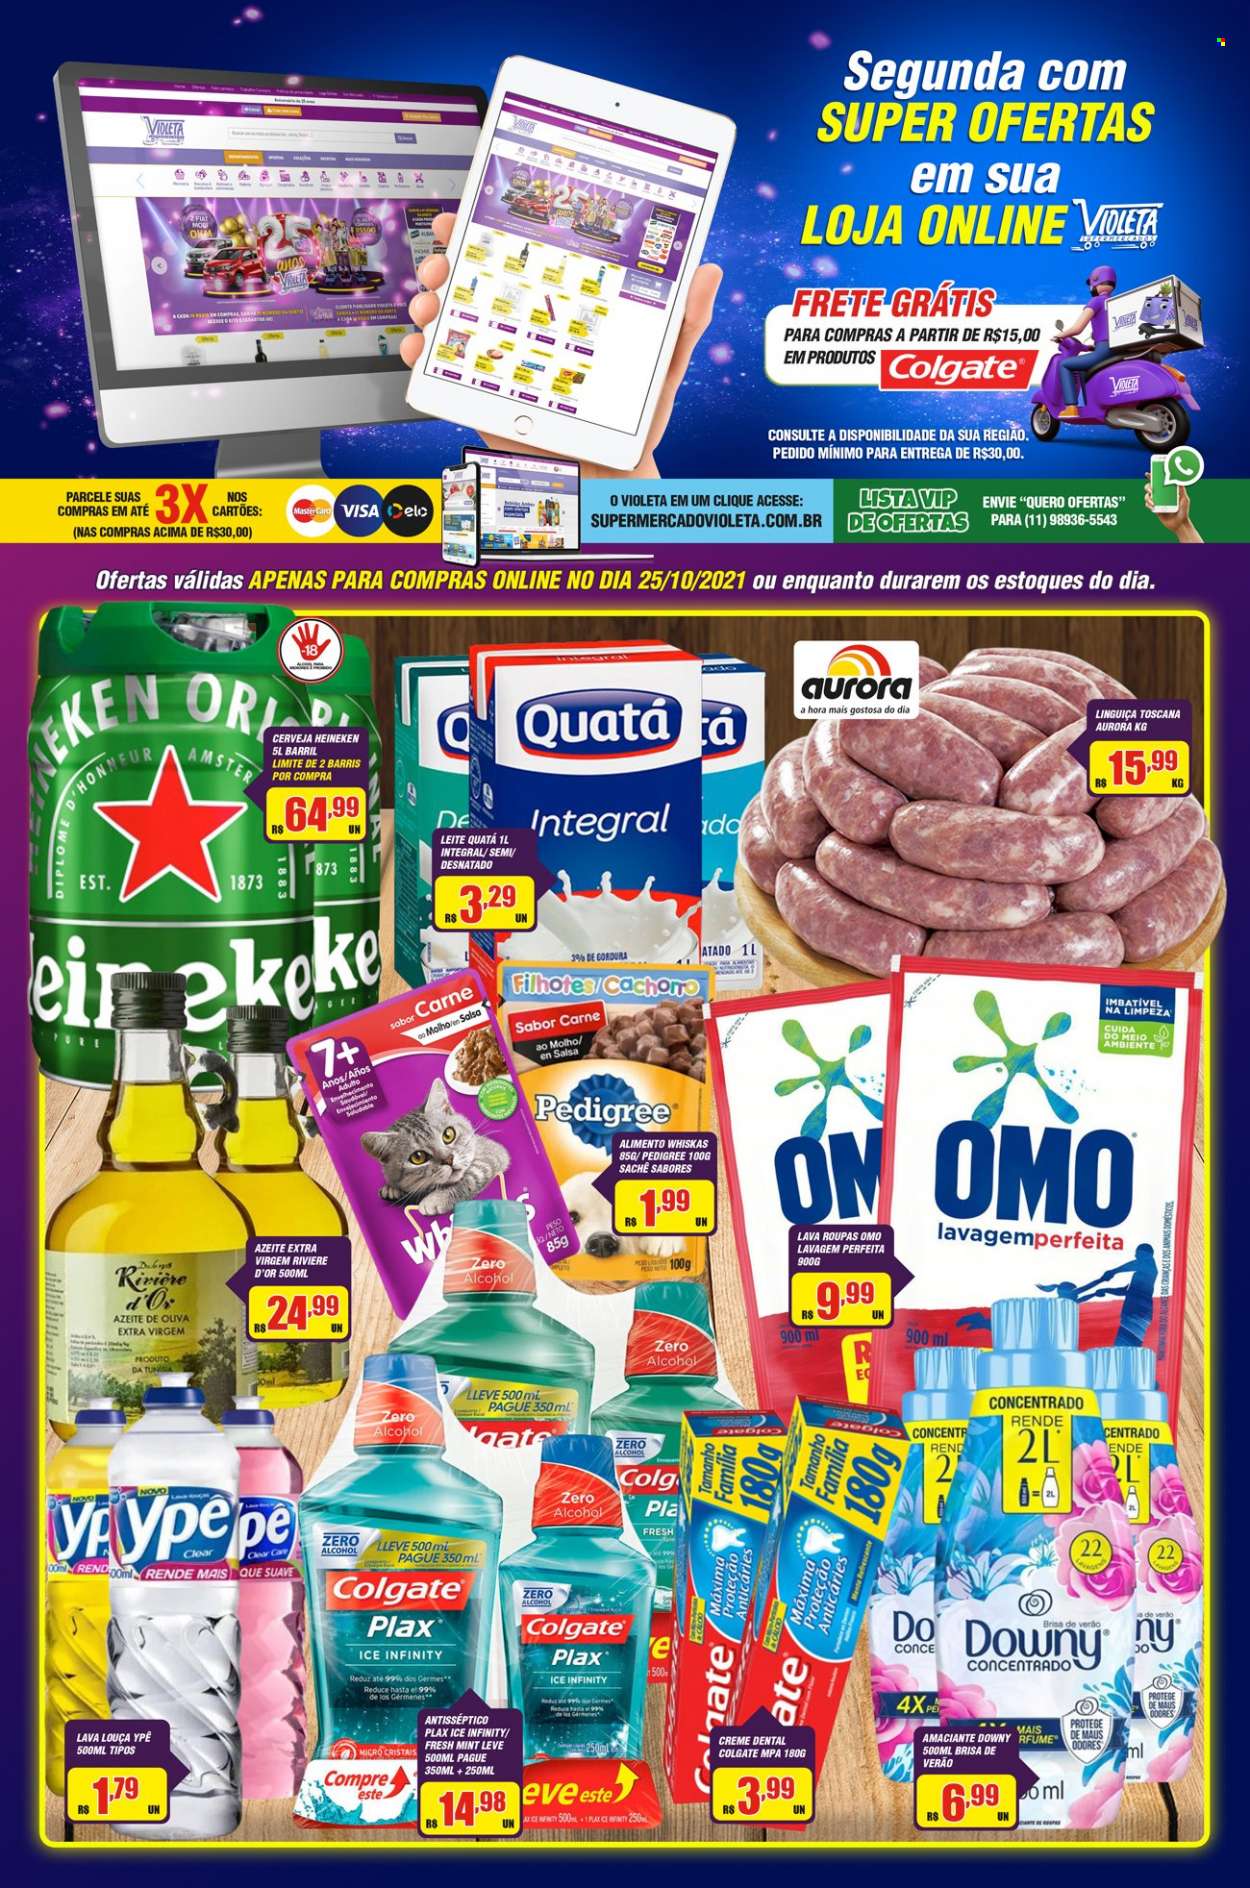 Encarte Supermercado Violeta  - 25.10.2021 - 25.10.2021.